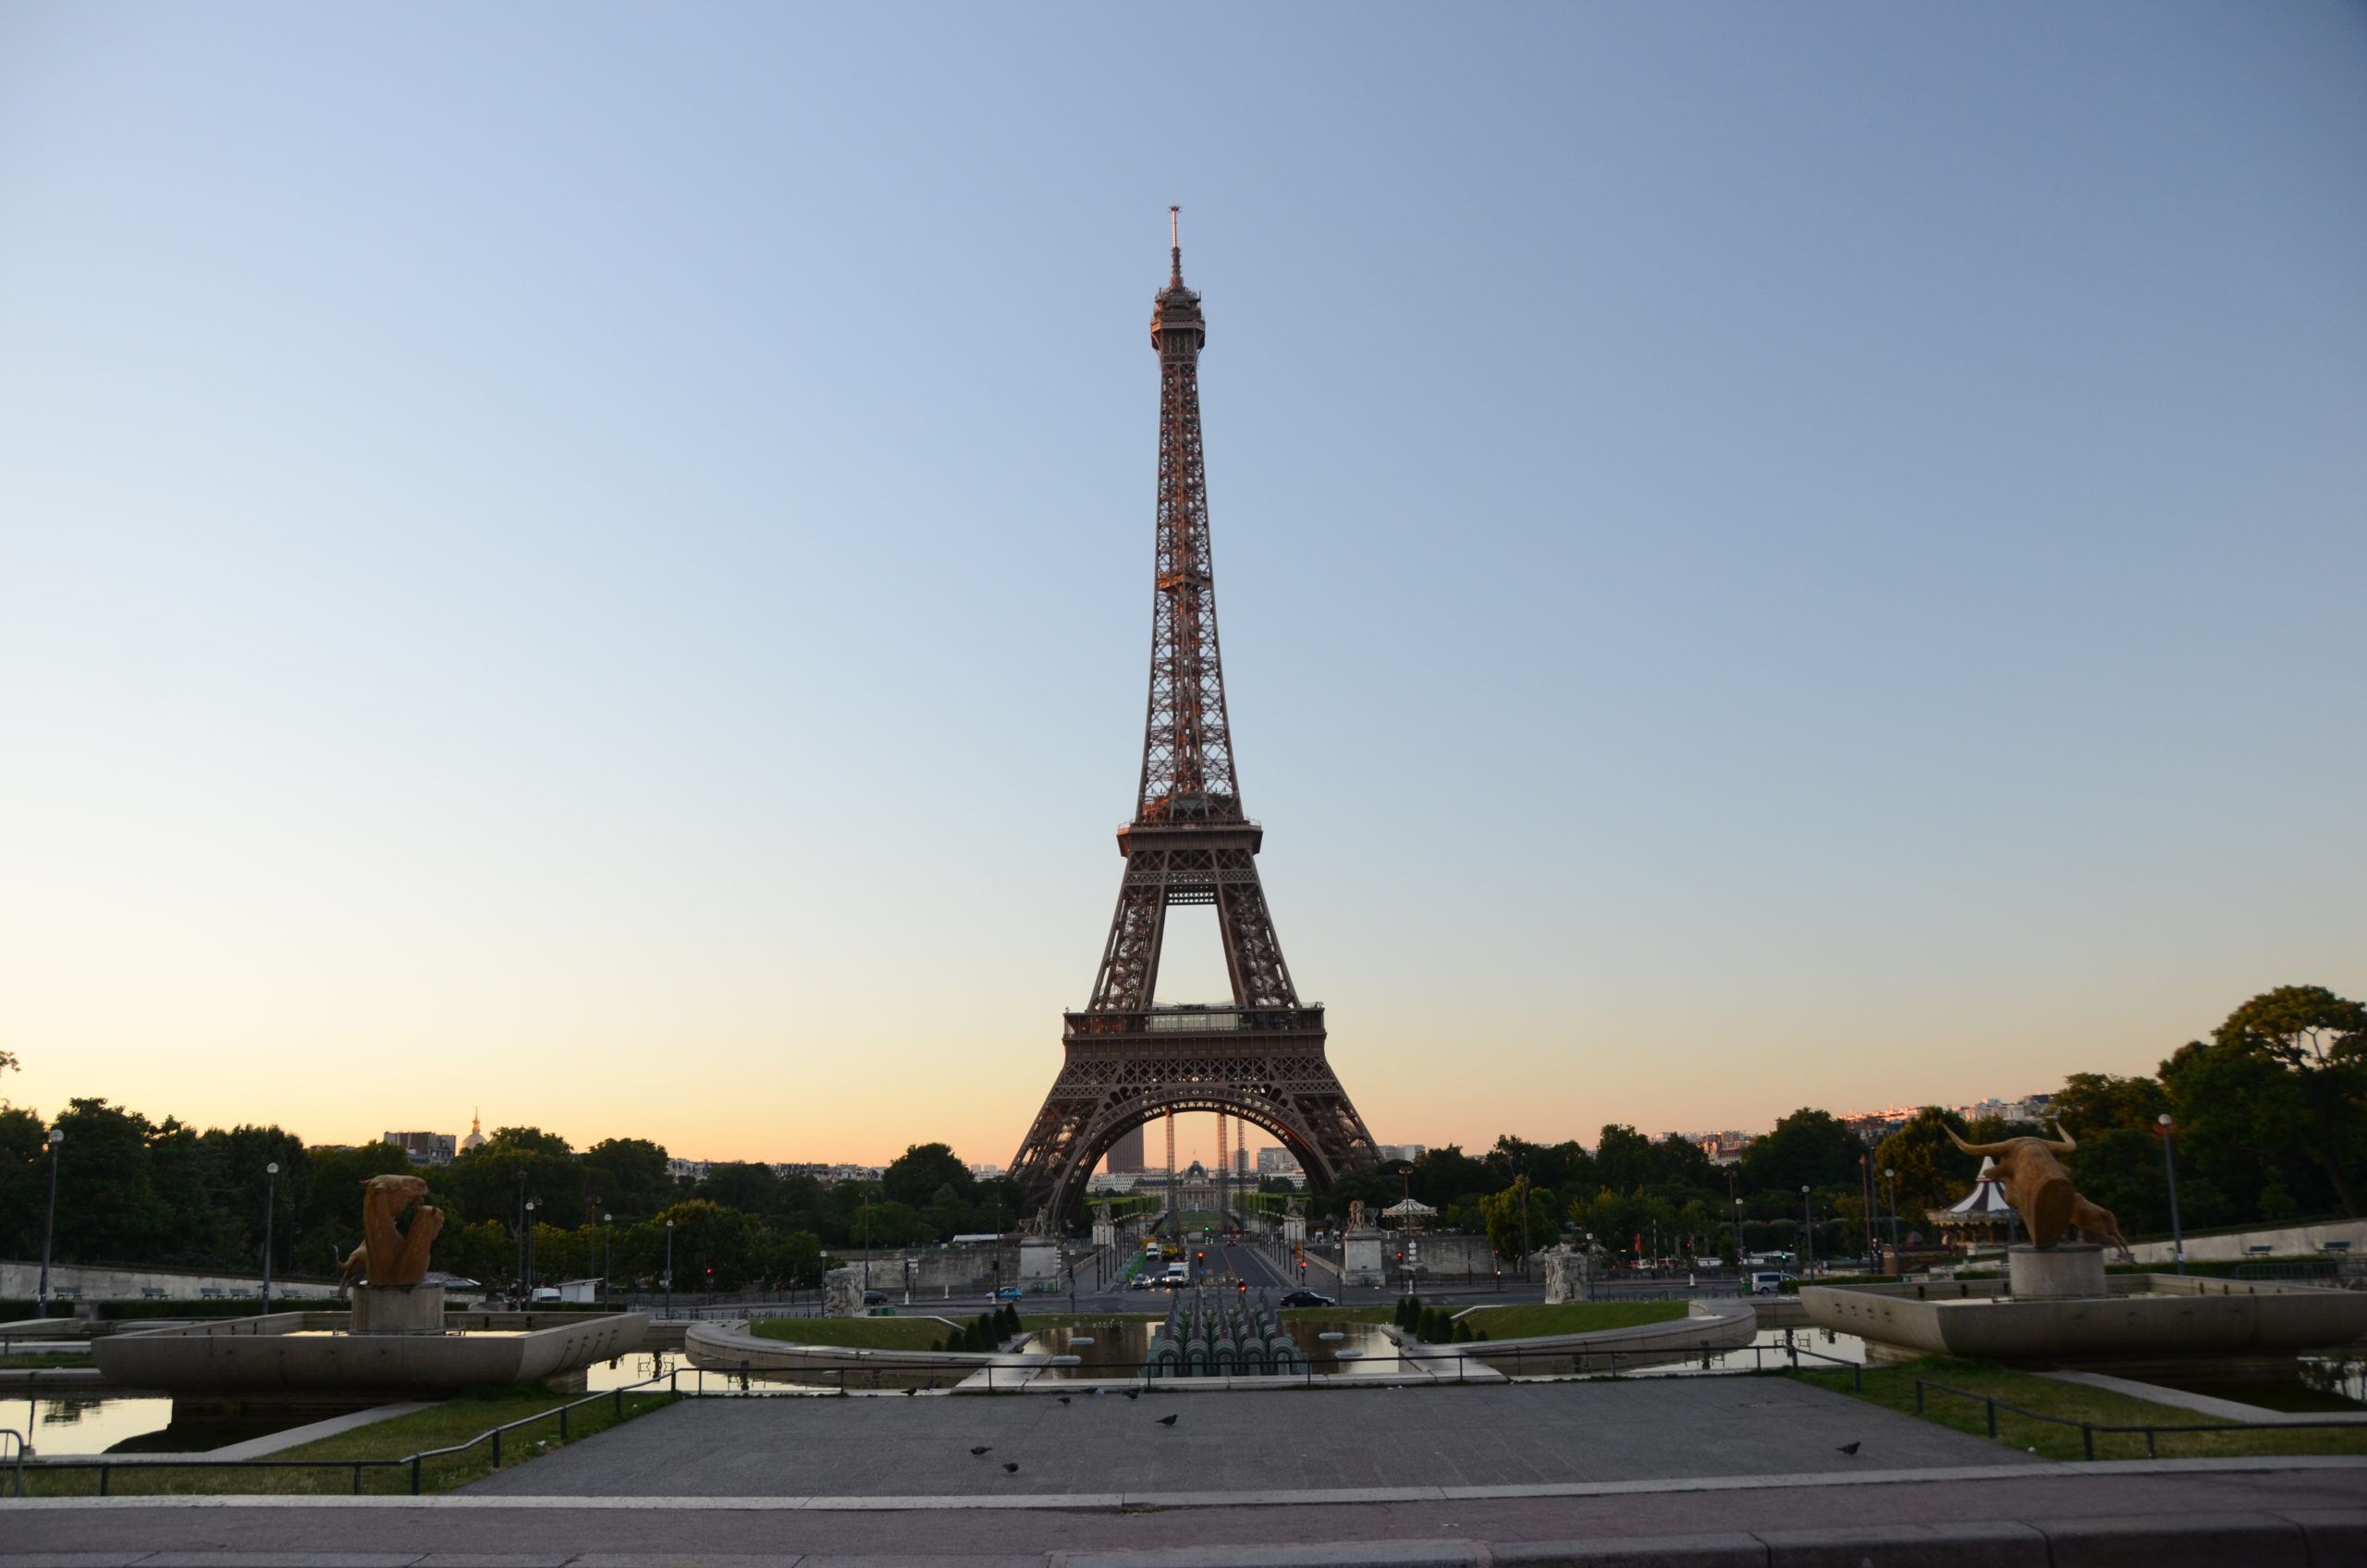 Eiffel Tower seen from Trocadéro